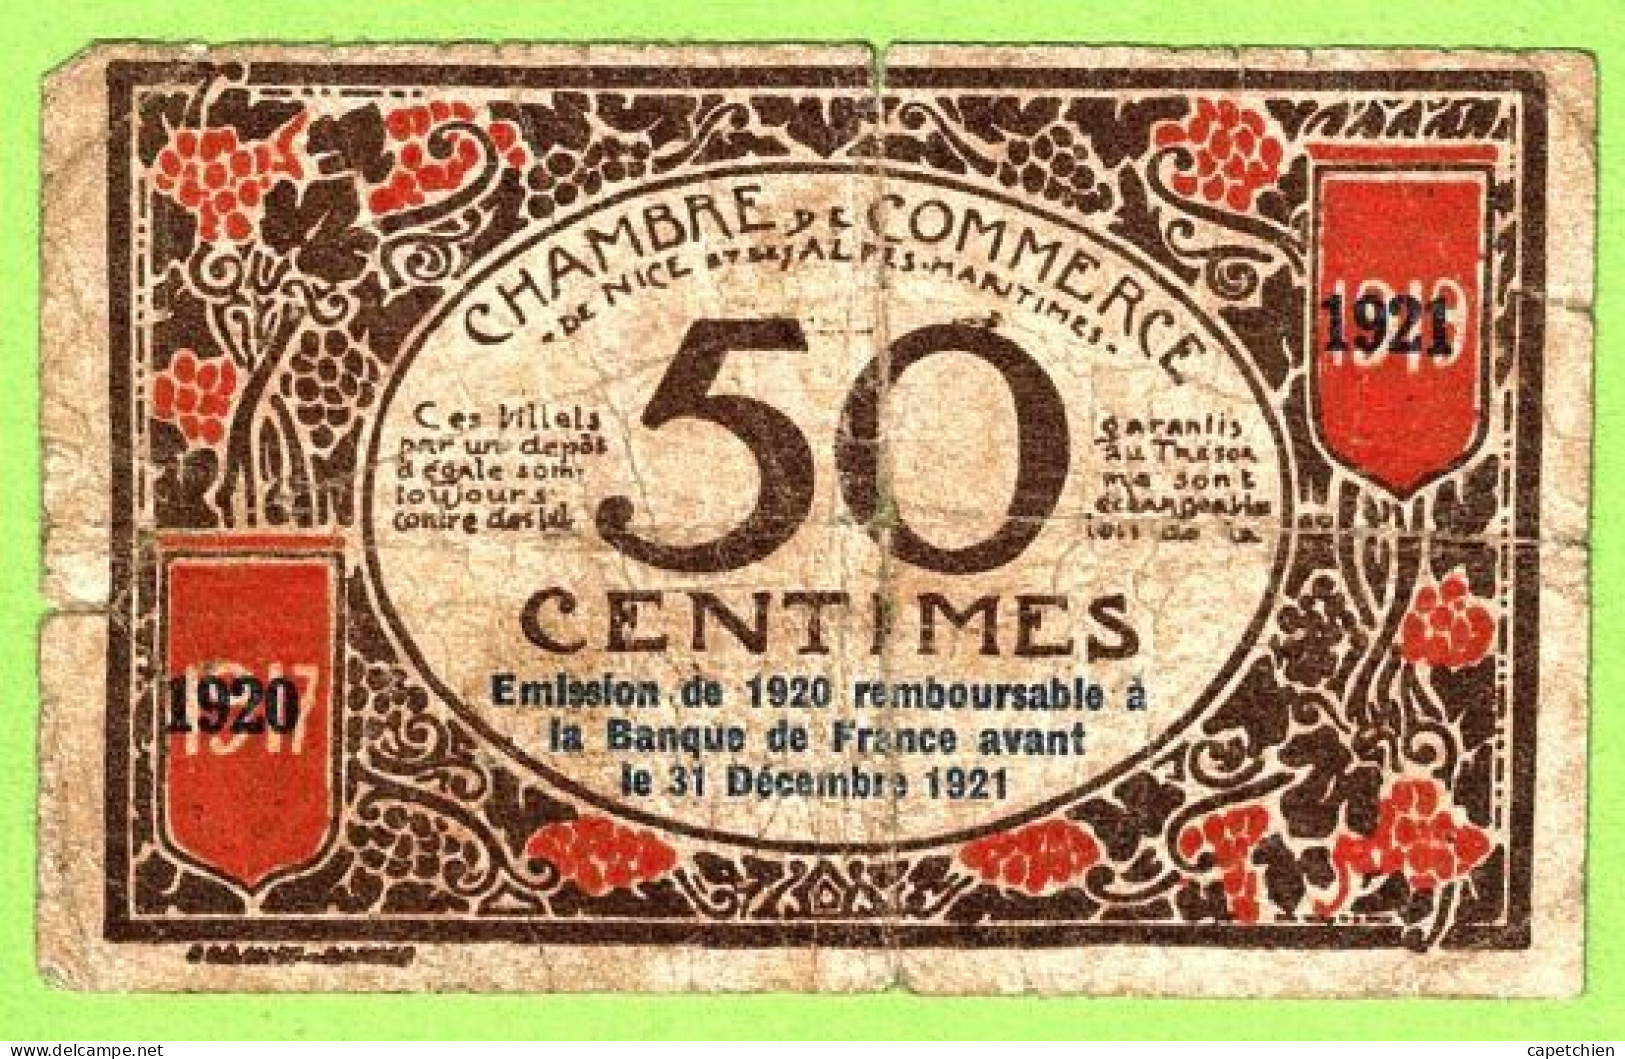 FRANCE / CHAMBRE De COMMERCE / NICE - ALPES MARITIMES / 50 CENTIMES / 1917 - 1921 SURCHARGE 1920 - 1921 / N° 00374 - Cámara De Comercio